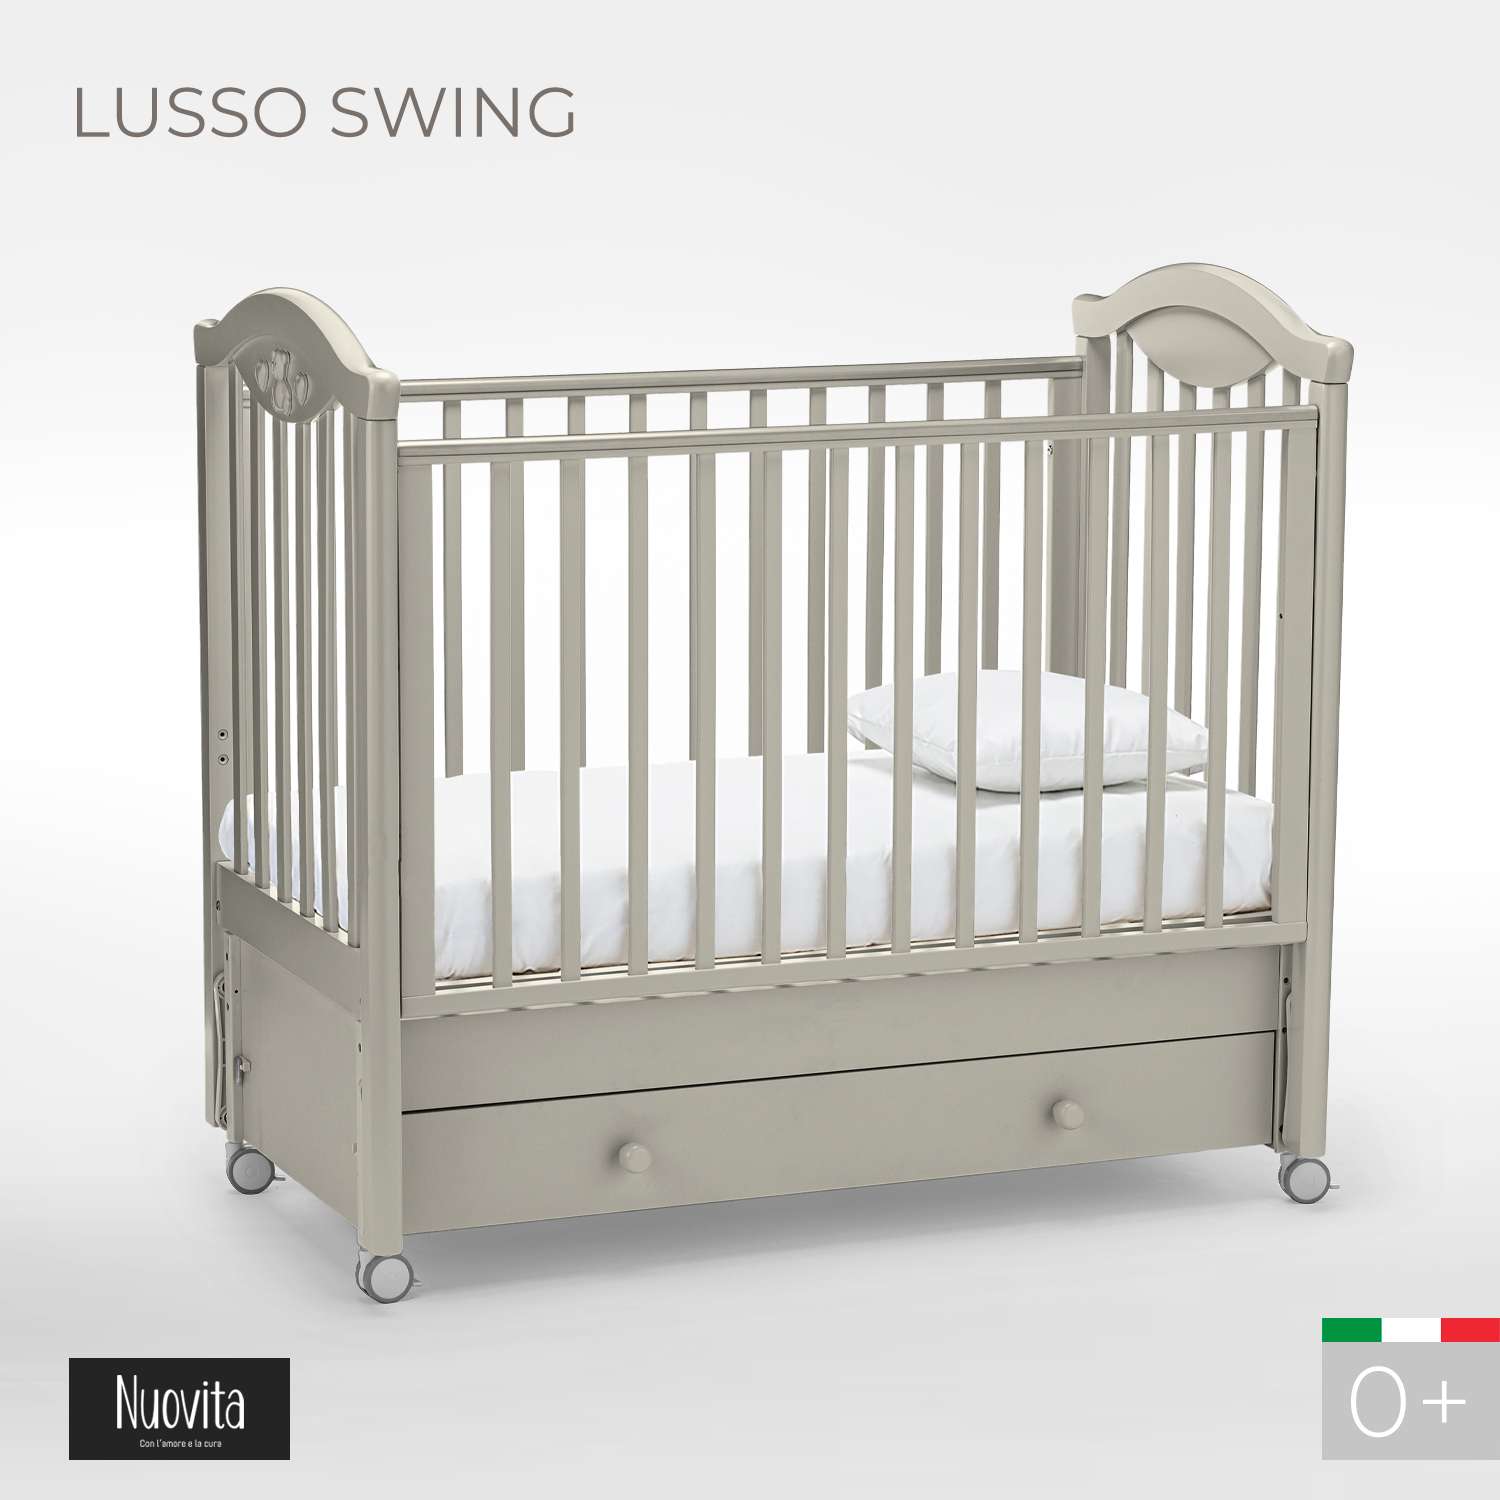 Детская кроватка Nuovita Lusso Swing прямоугольная, продольный маятник (серый) - фото 2